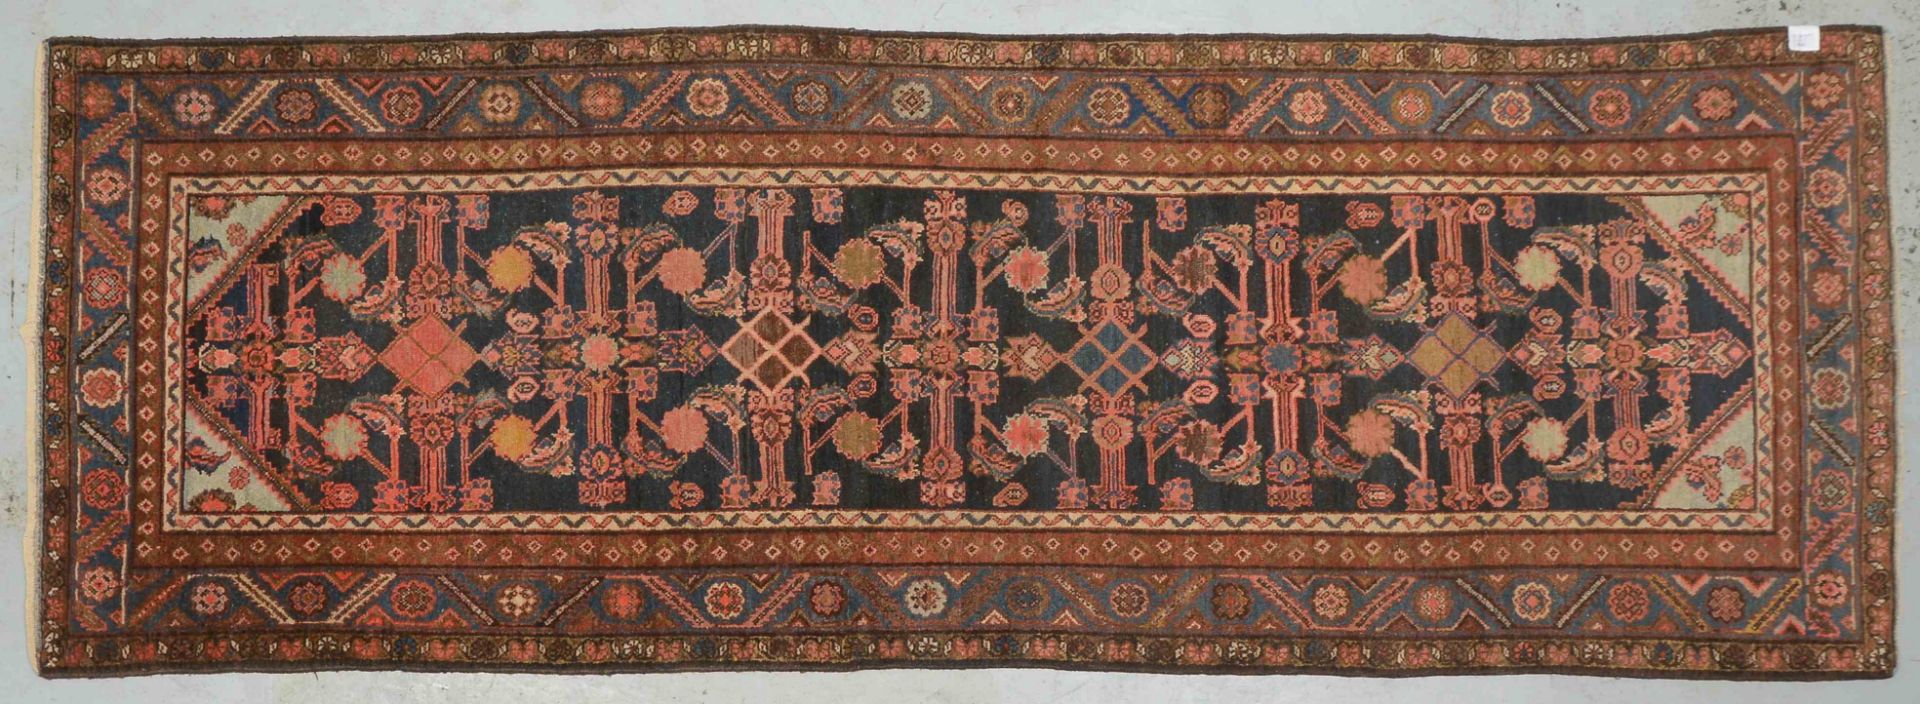 Malayer-Galerie, antik, dunkelblauer Fond, mit Herati-Musterung, gleichmaessiger Flor, in originaler